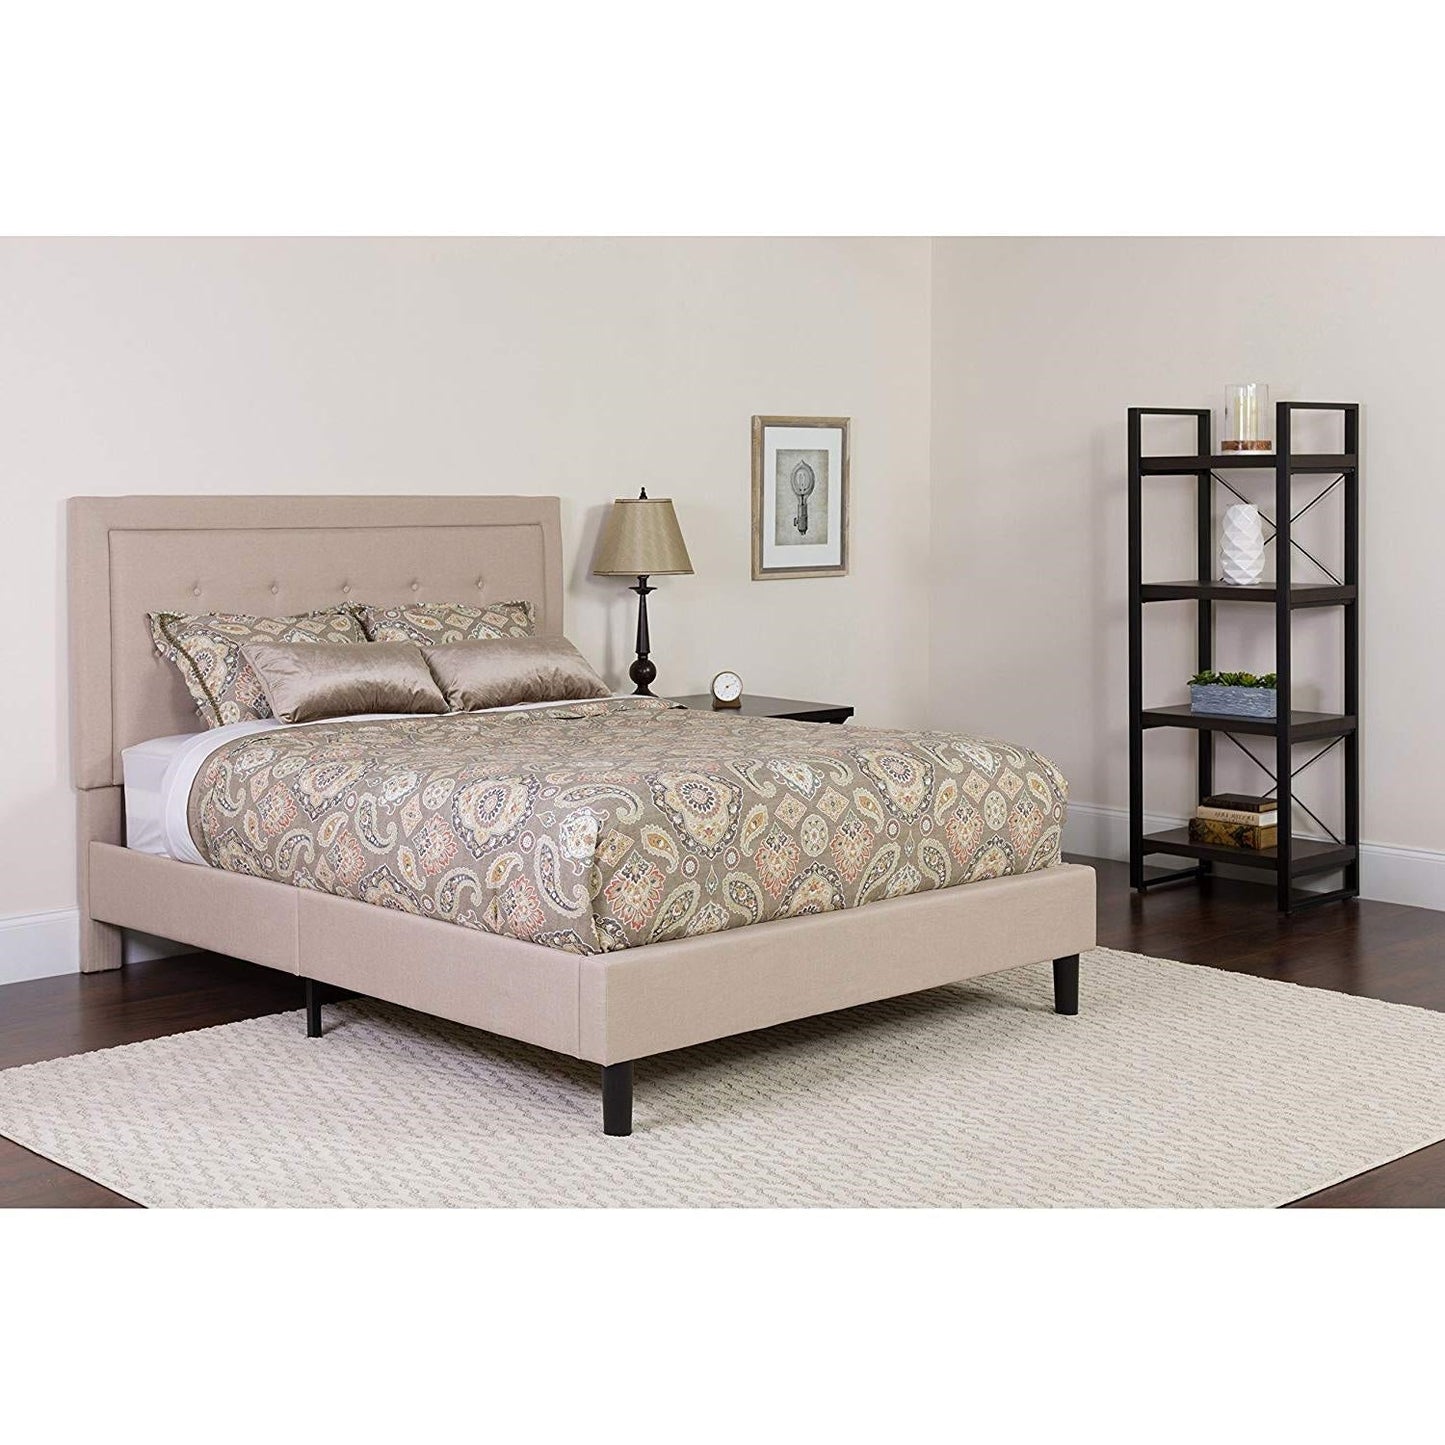 Bedroom > Bed Frames > Platform Beds - Queen Beige Upholstered Platform Bed Frame With Button Tufted Headboard